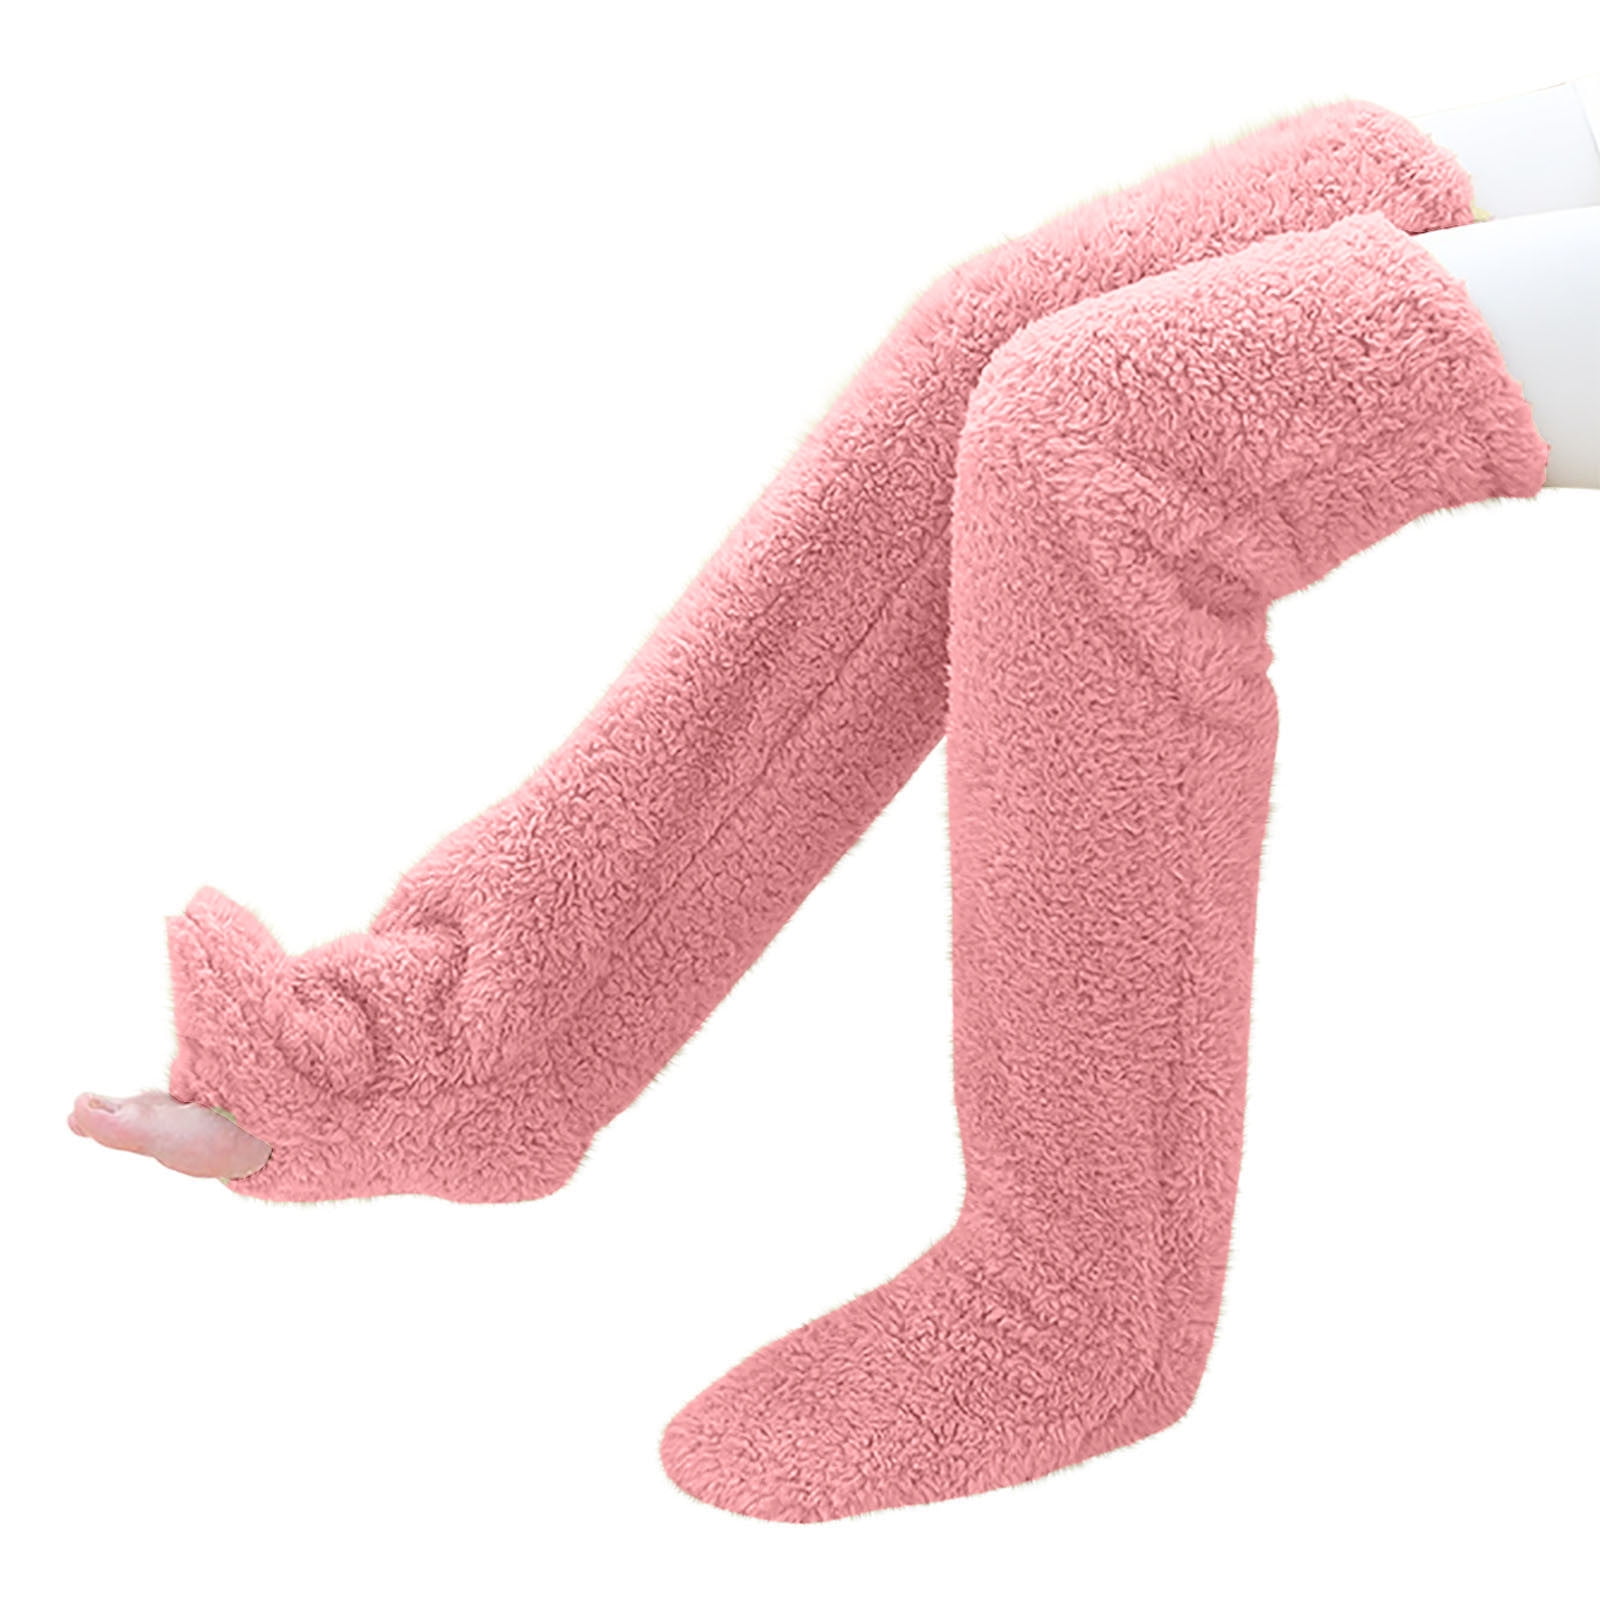 Snuggs Cozy Socks, Sock Slippers for Women and Men, Knee High